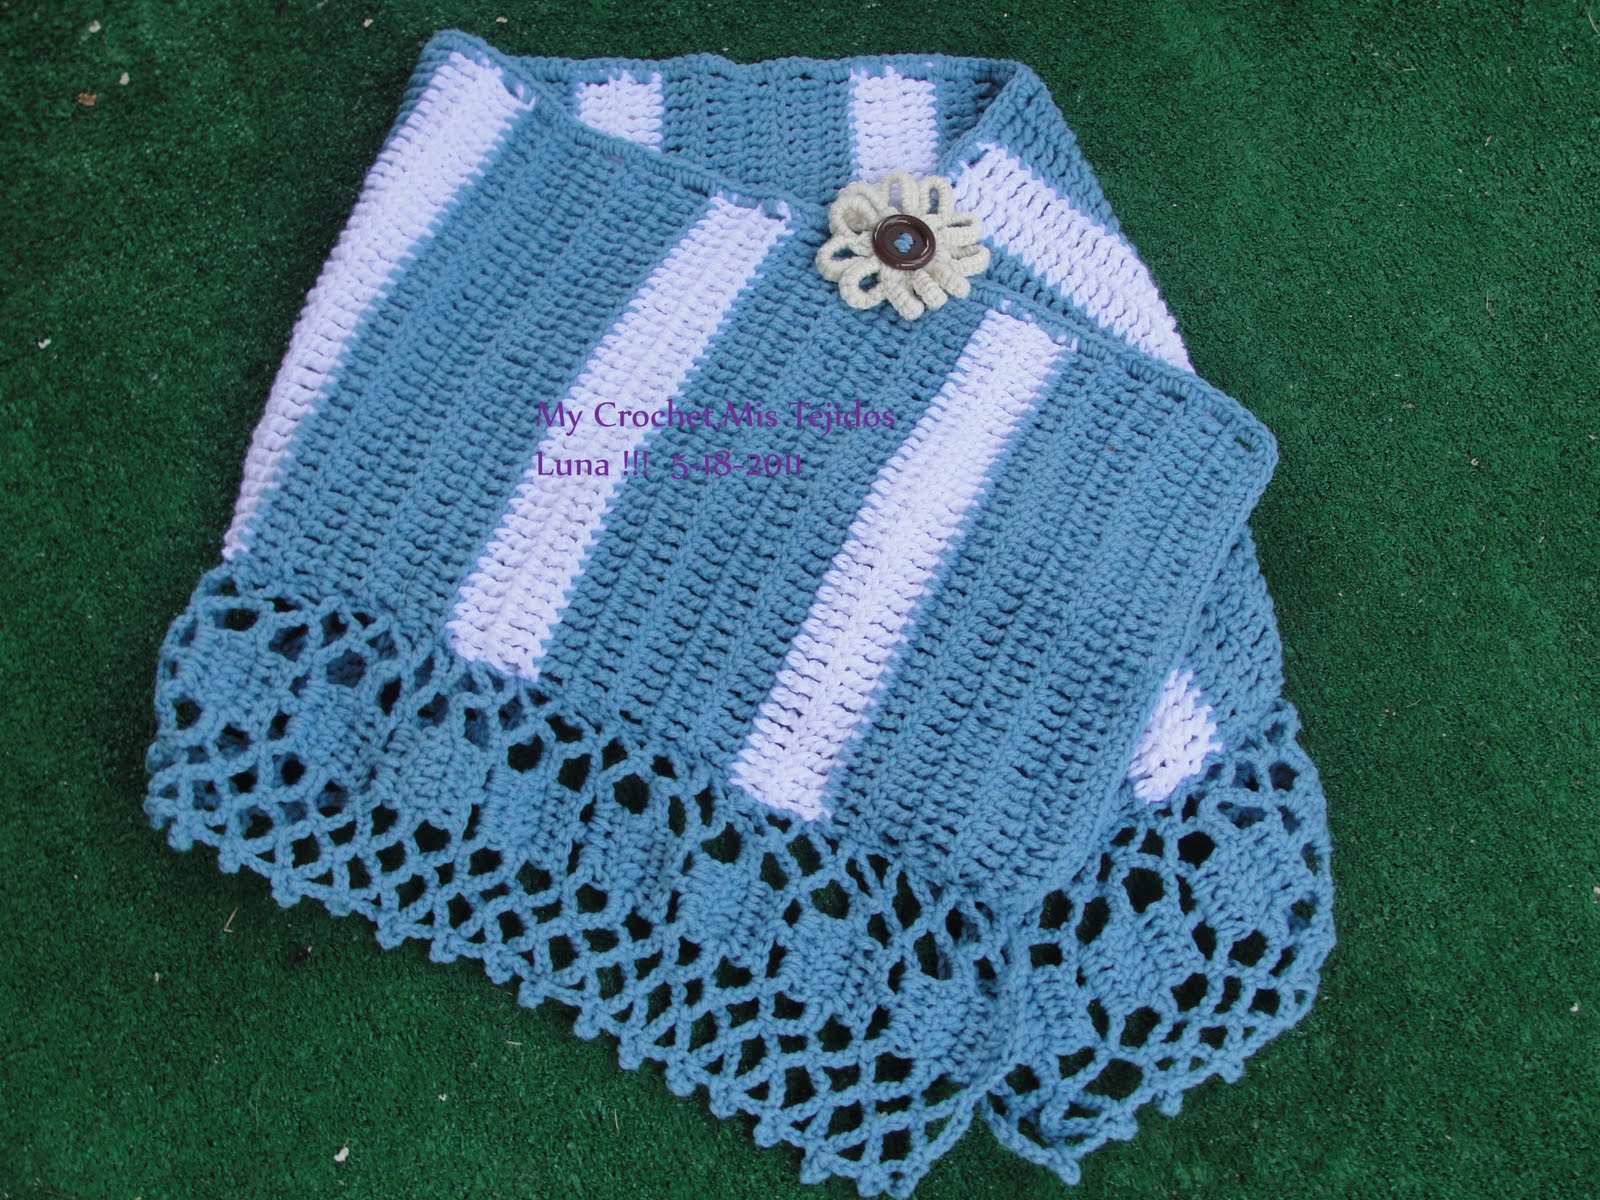 My Crochet , Tejidos Luna: Estola , Chal o Capa sencillita muy facil de elaborar.